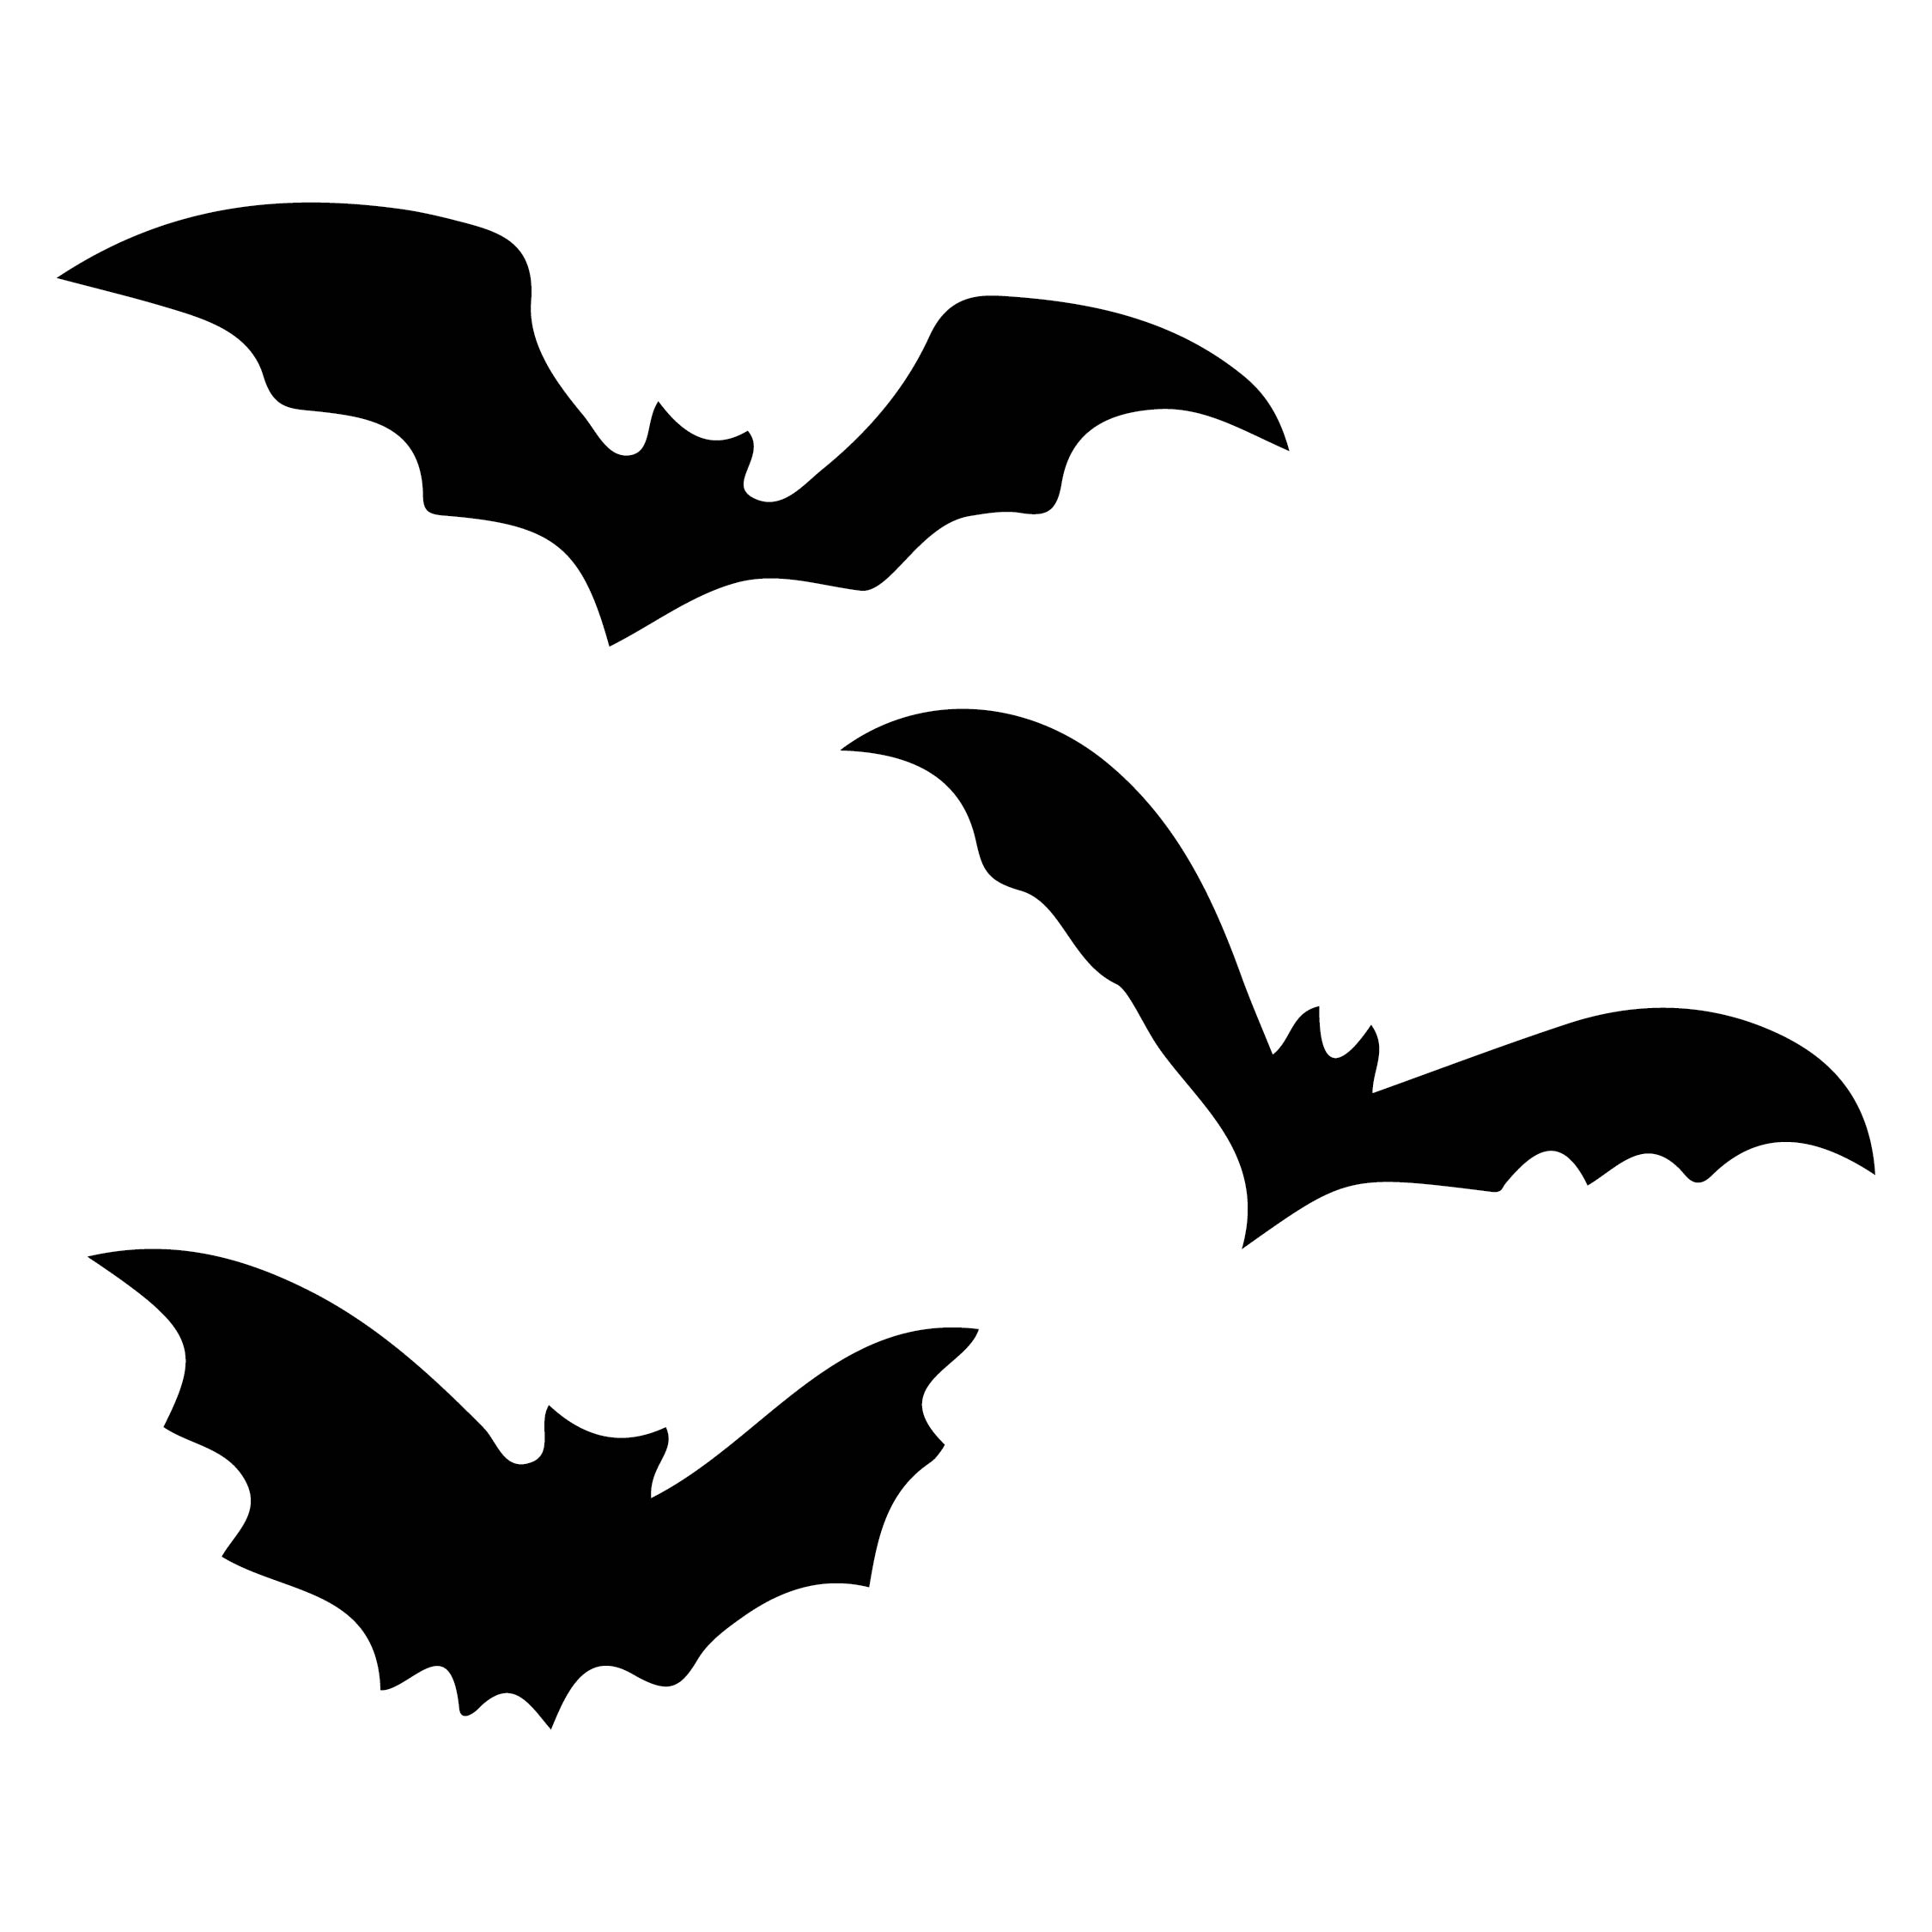 7 Best Images of Halloween Bat Stencils Printable Halloween Bat